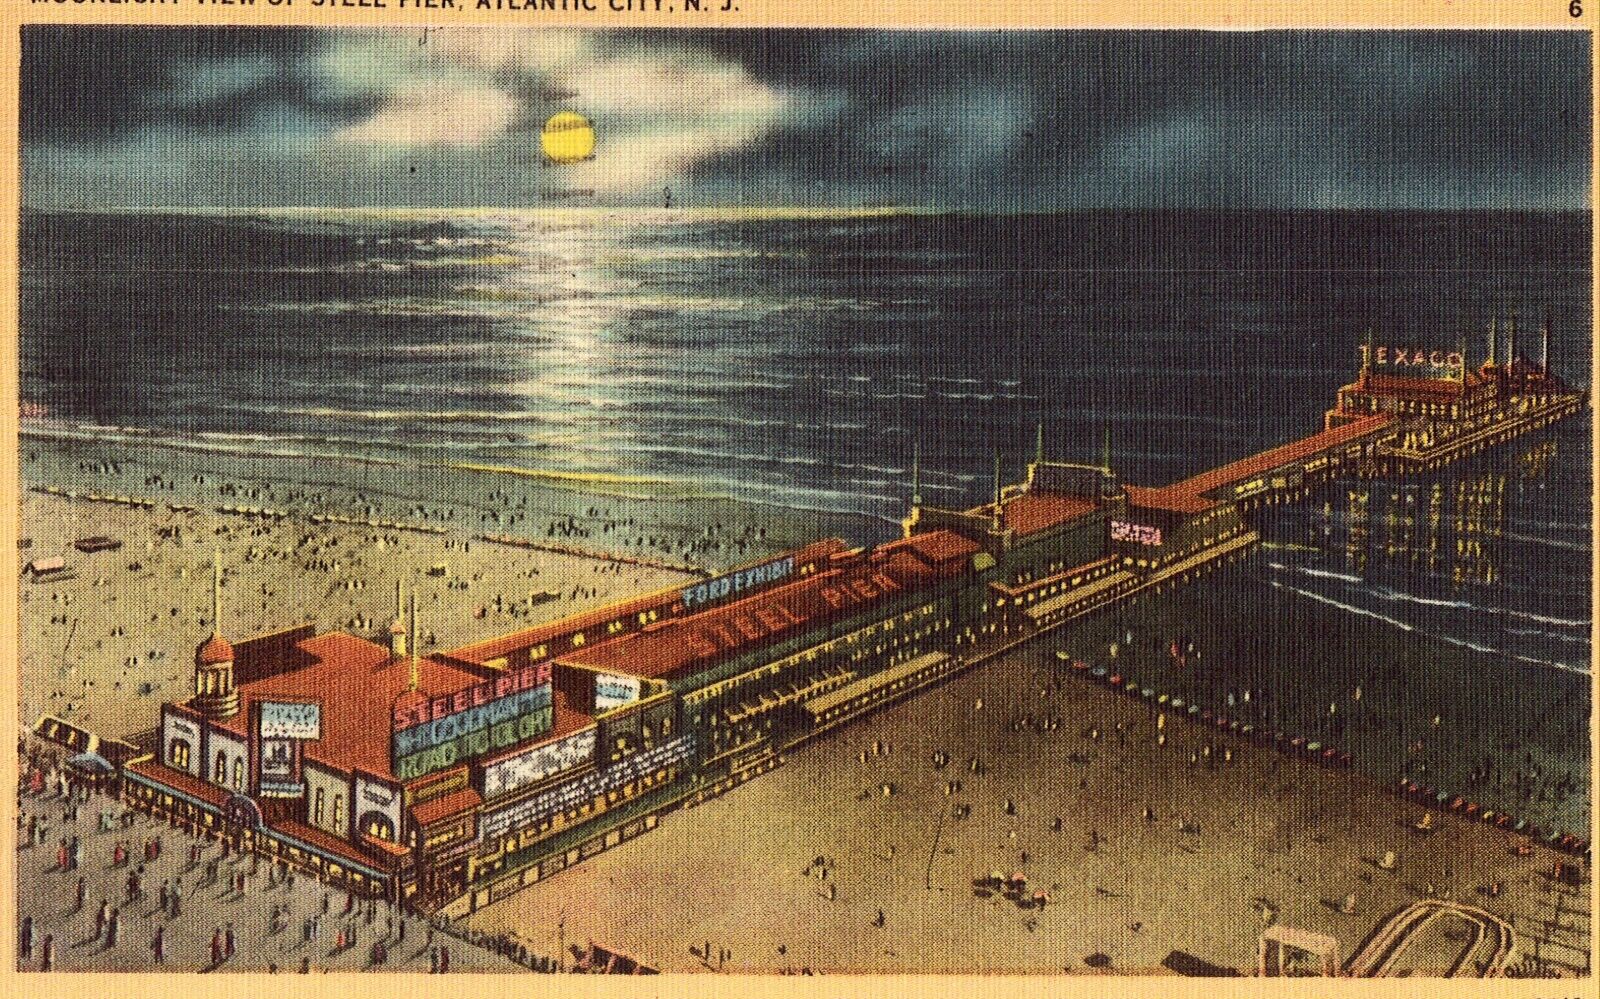 Moonlight View of Steel Pier - Atlantic City Linen Postcard